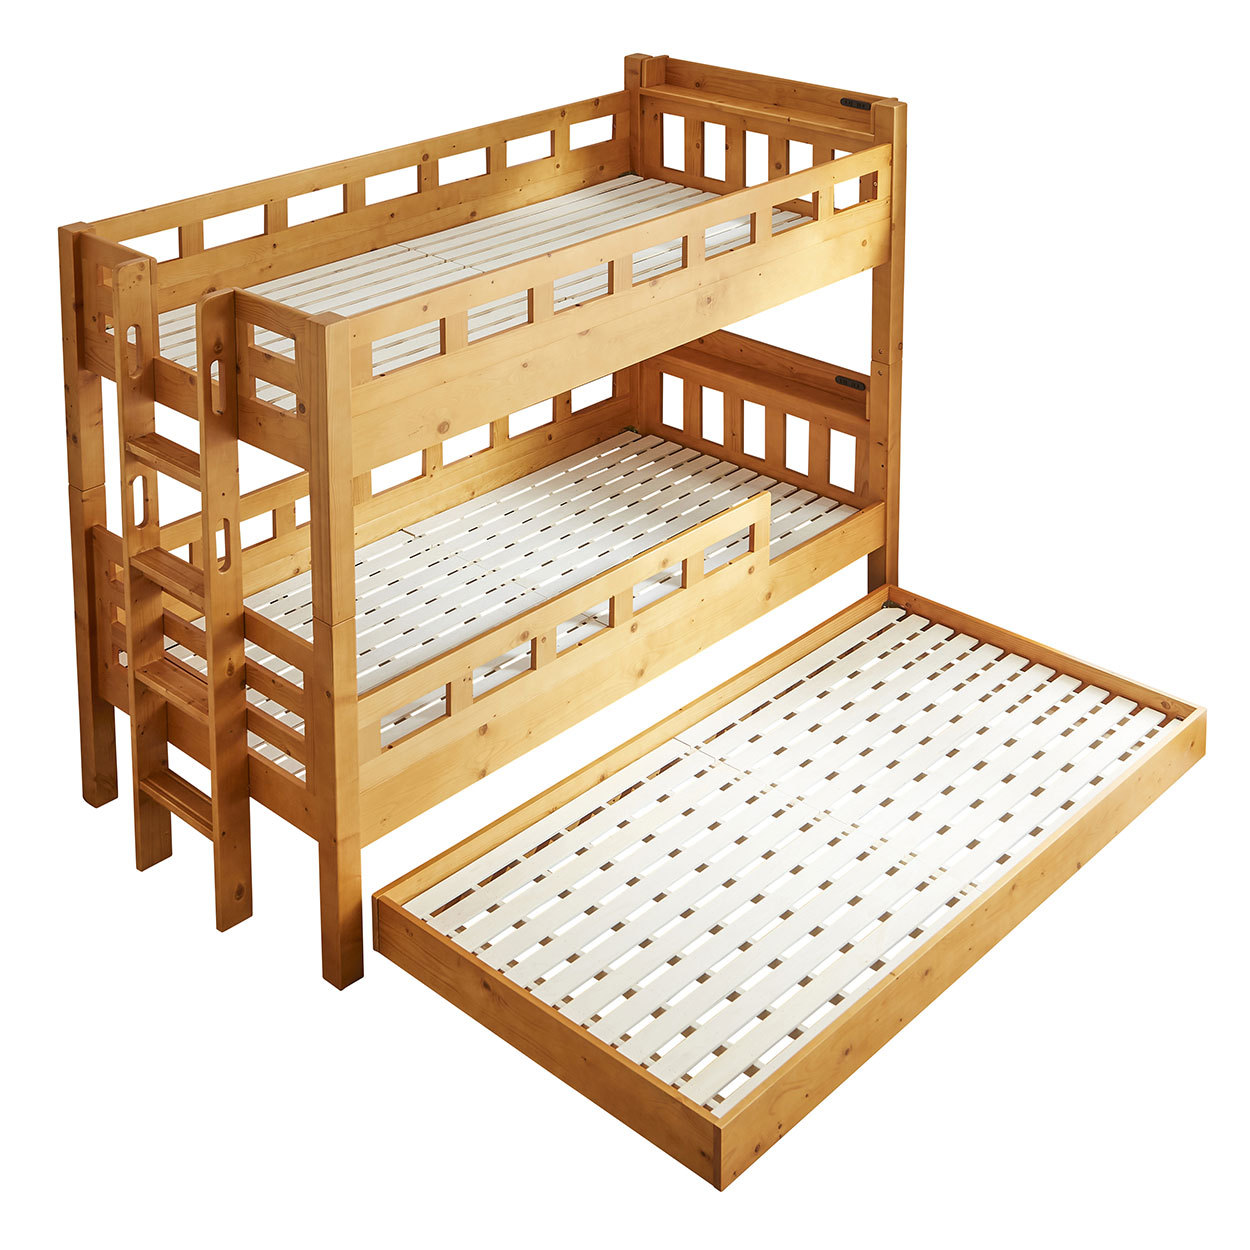 3段ベッド 三段ベッド シングル ベッドフレーム 木製 2段ベッドと子ベッド 高さ170cm 棚付き...